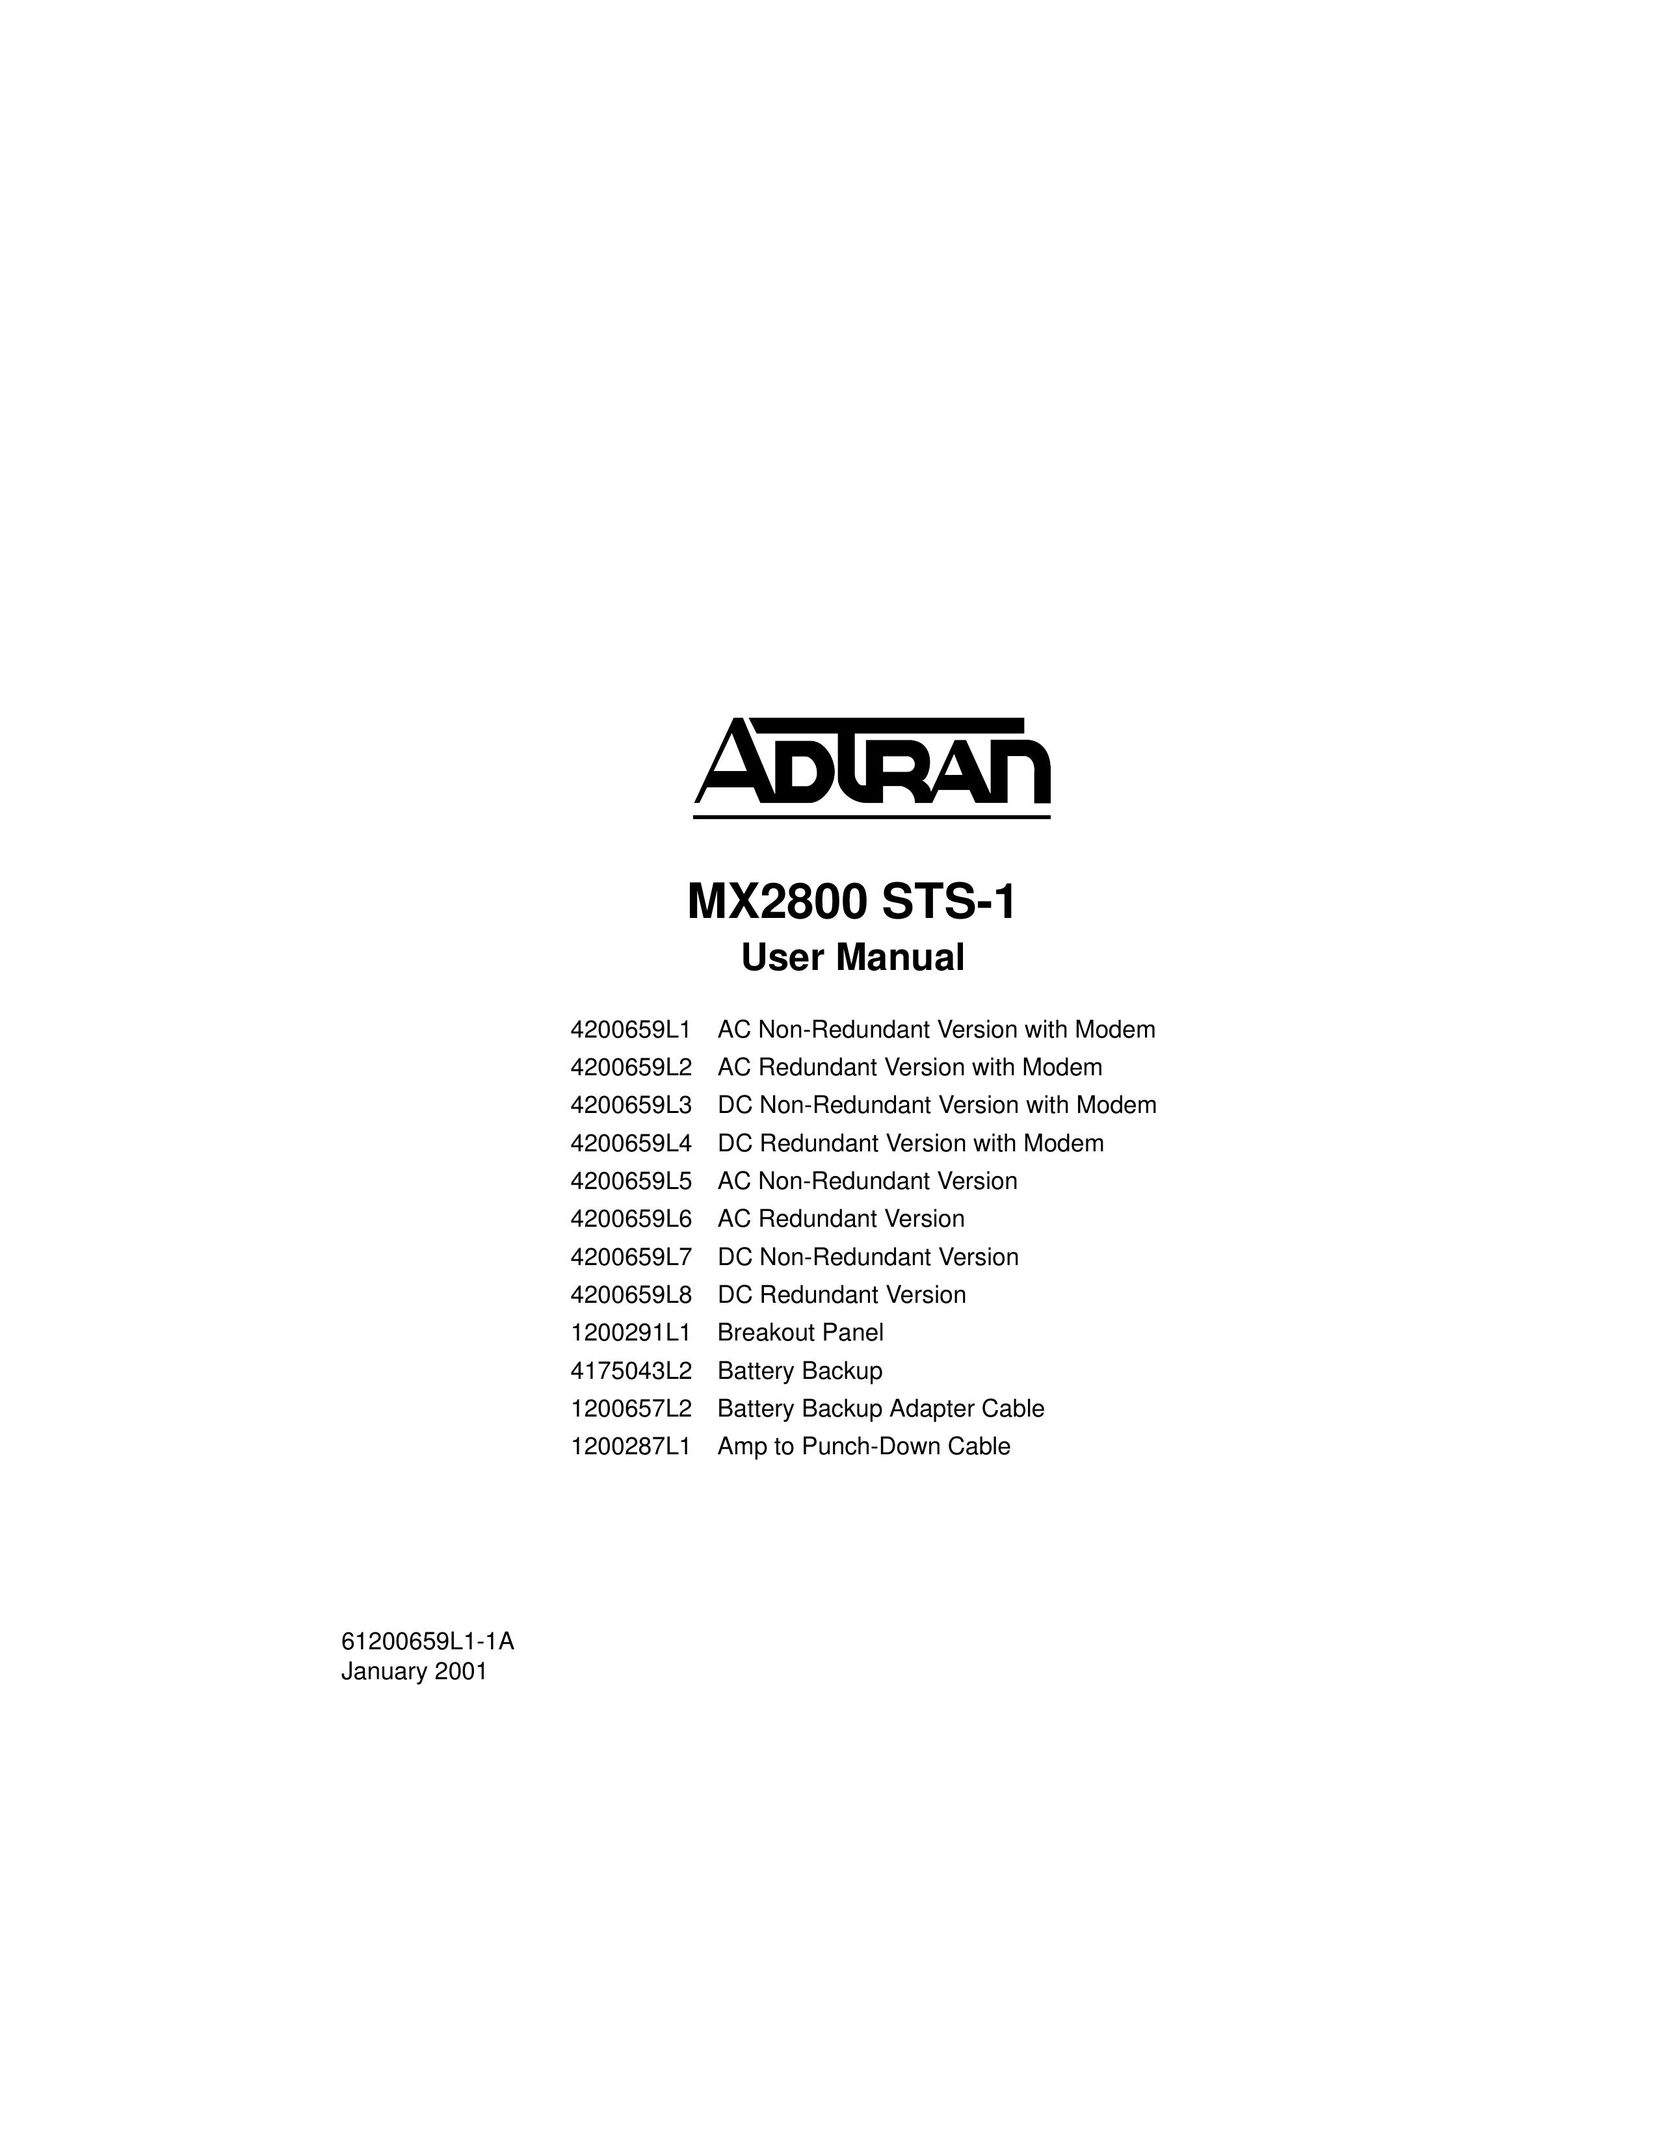 ADTRAN 4200659L8 Switch User Manual